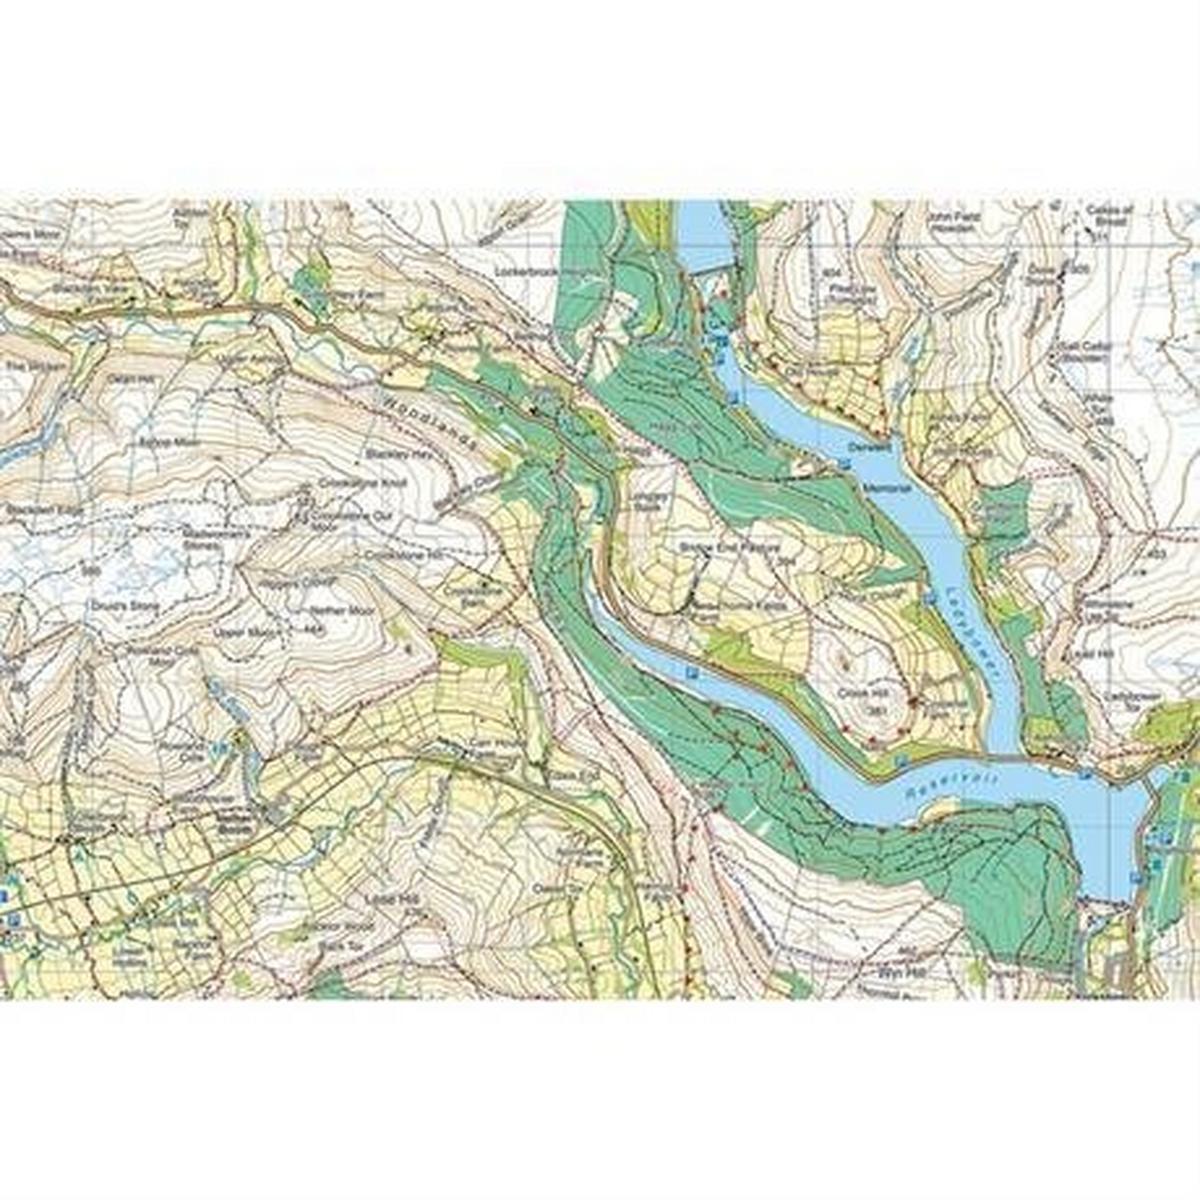 Harveys Harvey Ultramap XT40: Lake District - East